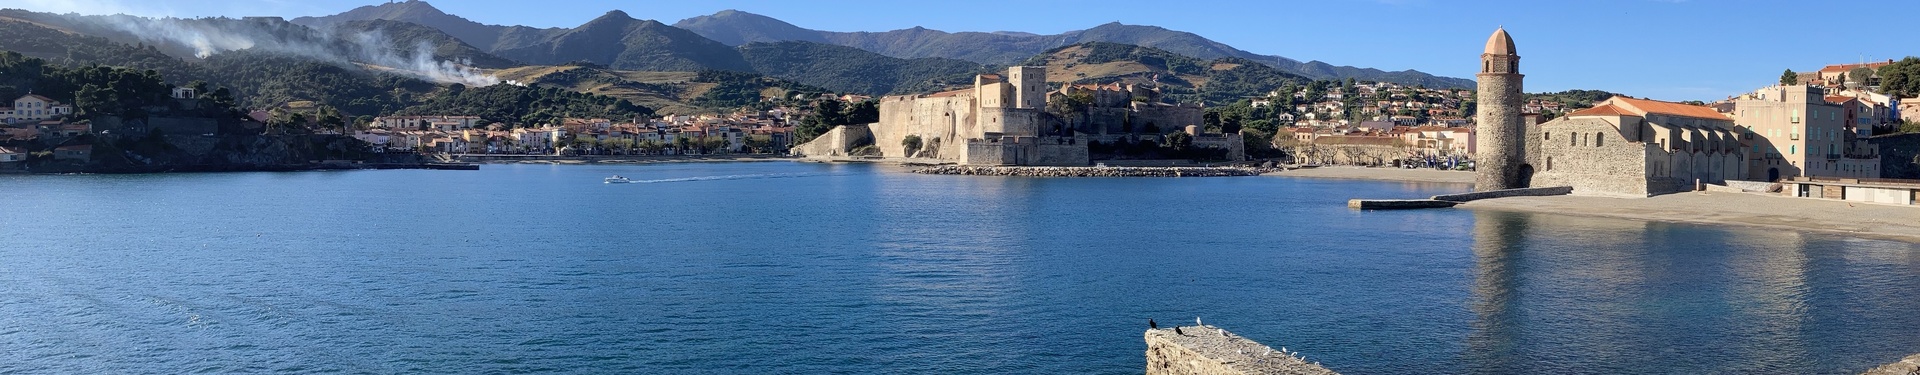 L'étoile de Collioure (Hôtel avec piscine) | Nature Occitane